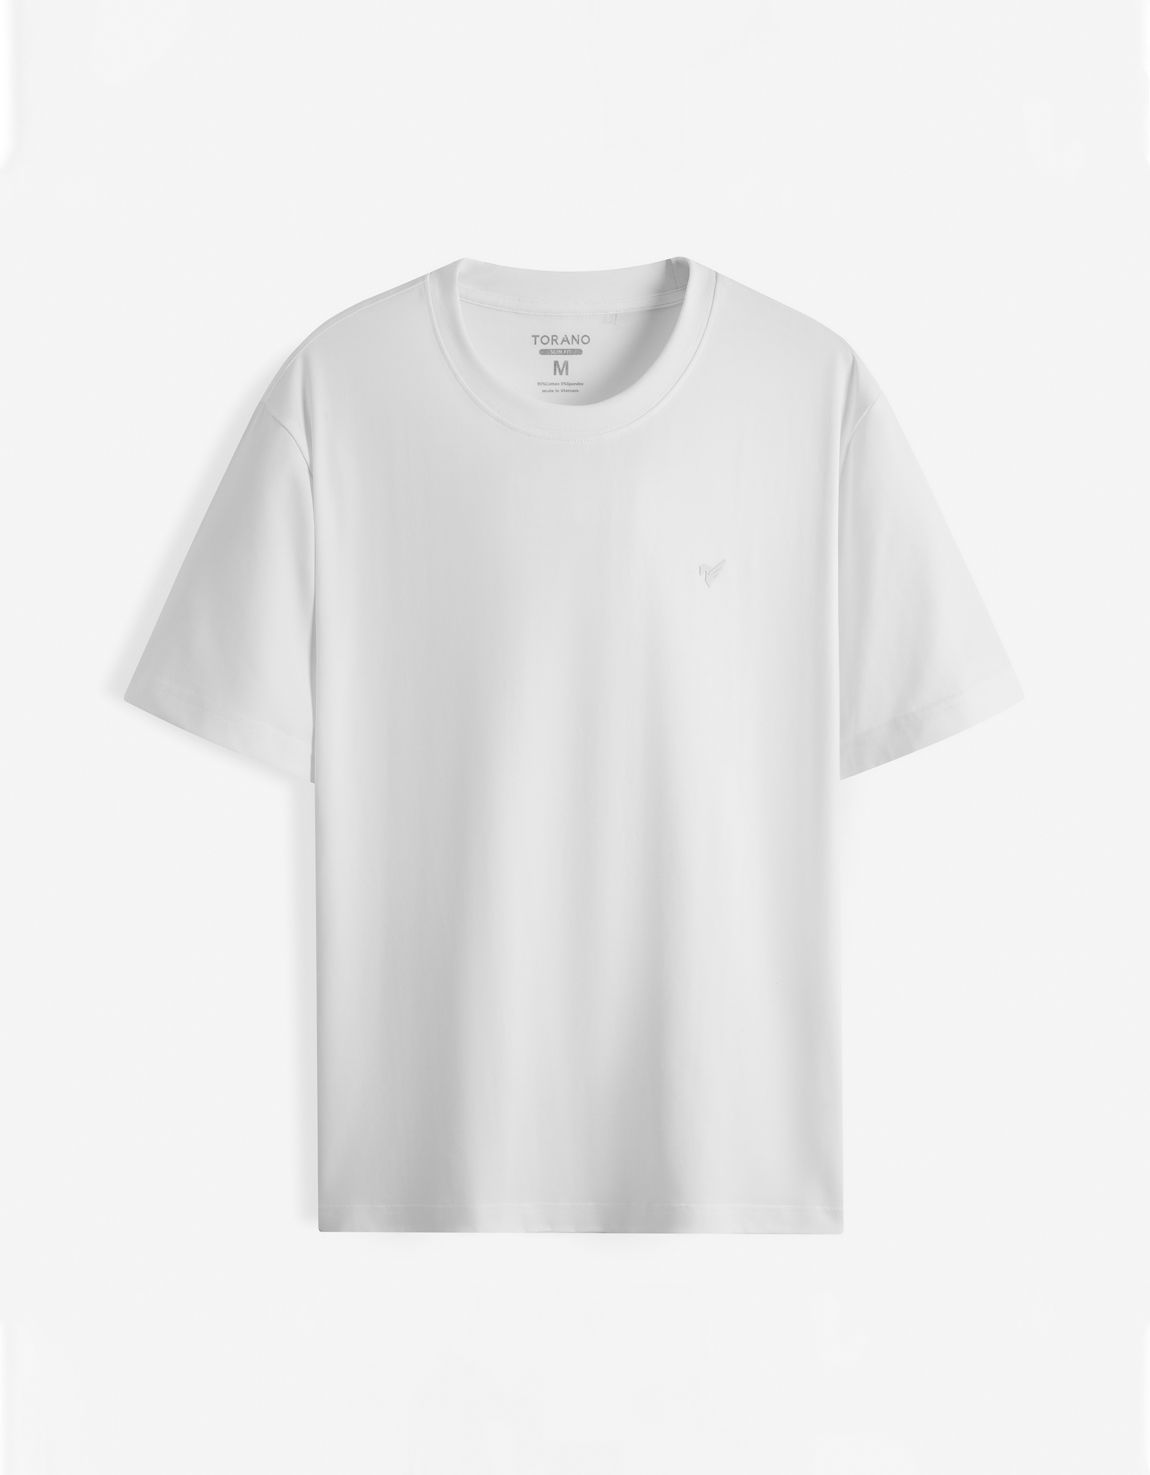  Áo T shirt trơn in logo ngực FSTS001 